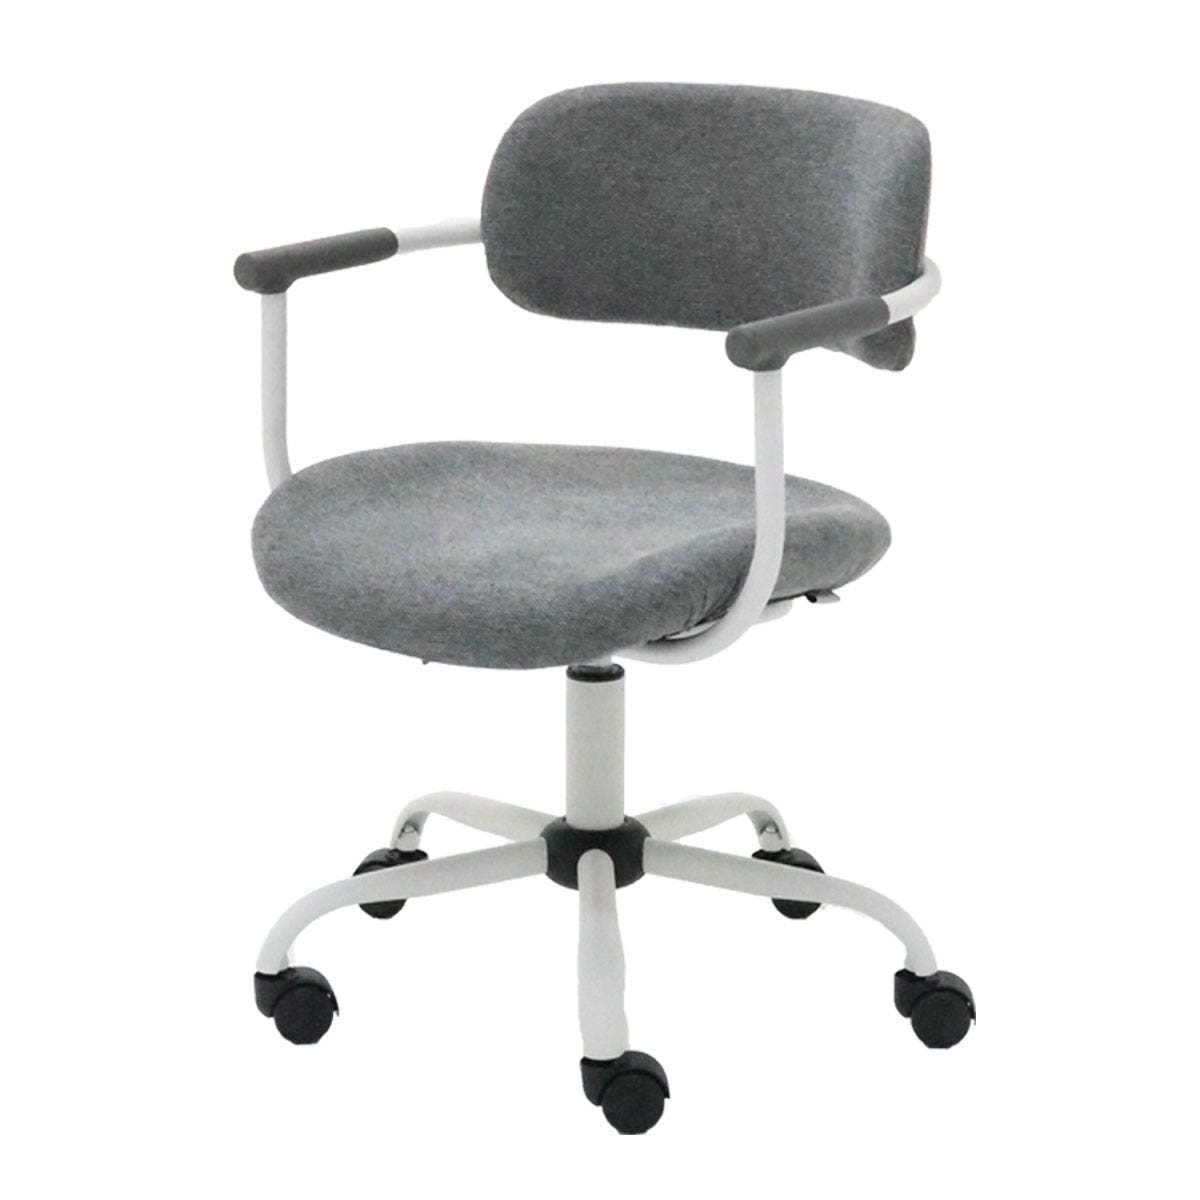 เก้าอี้สำนักงาน รุ่น Laminy สีเทา01